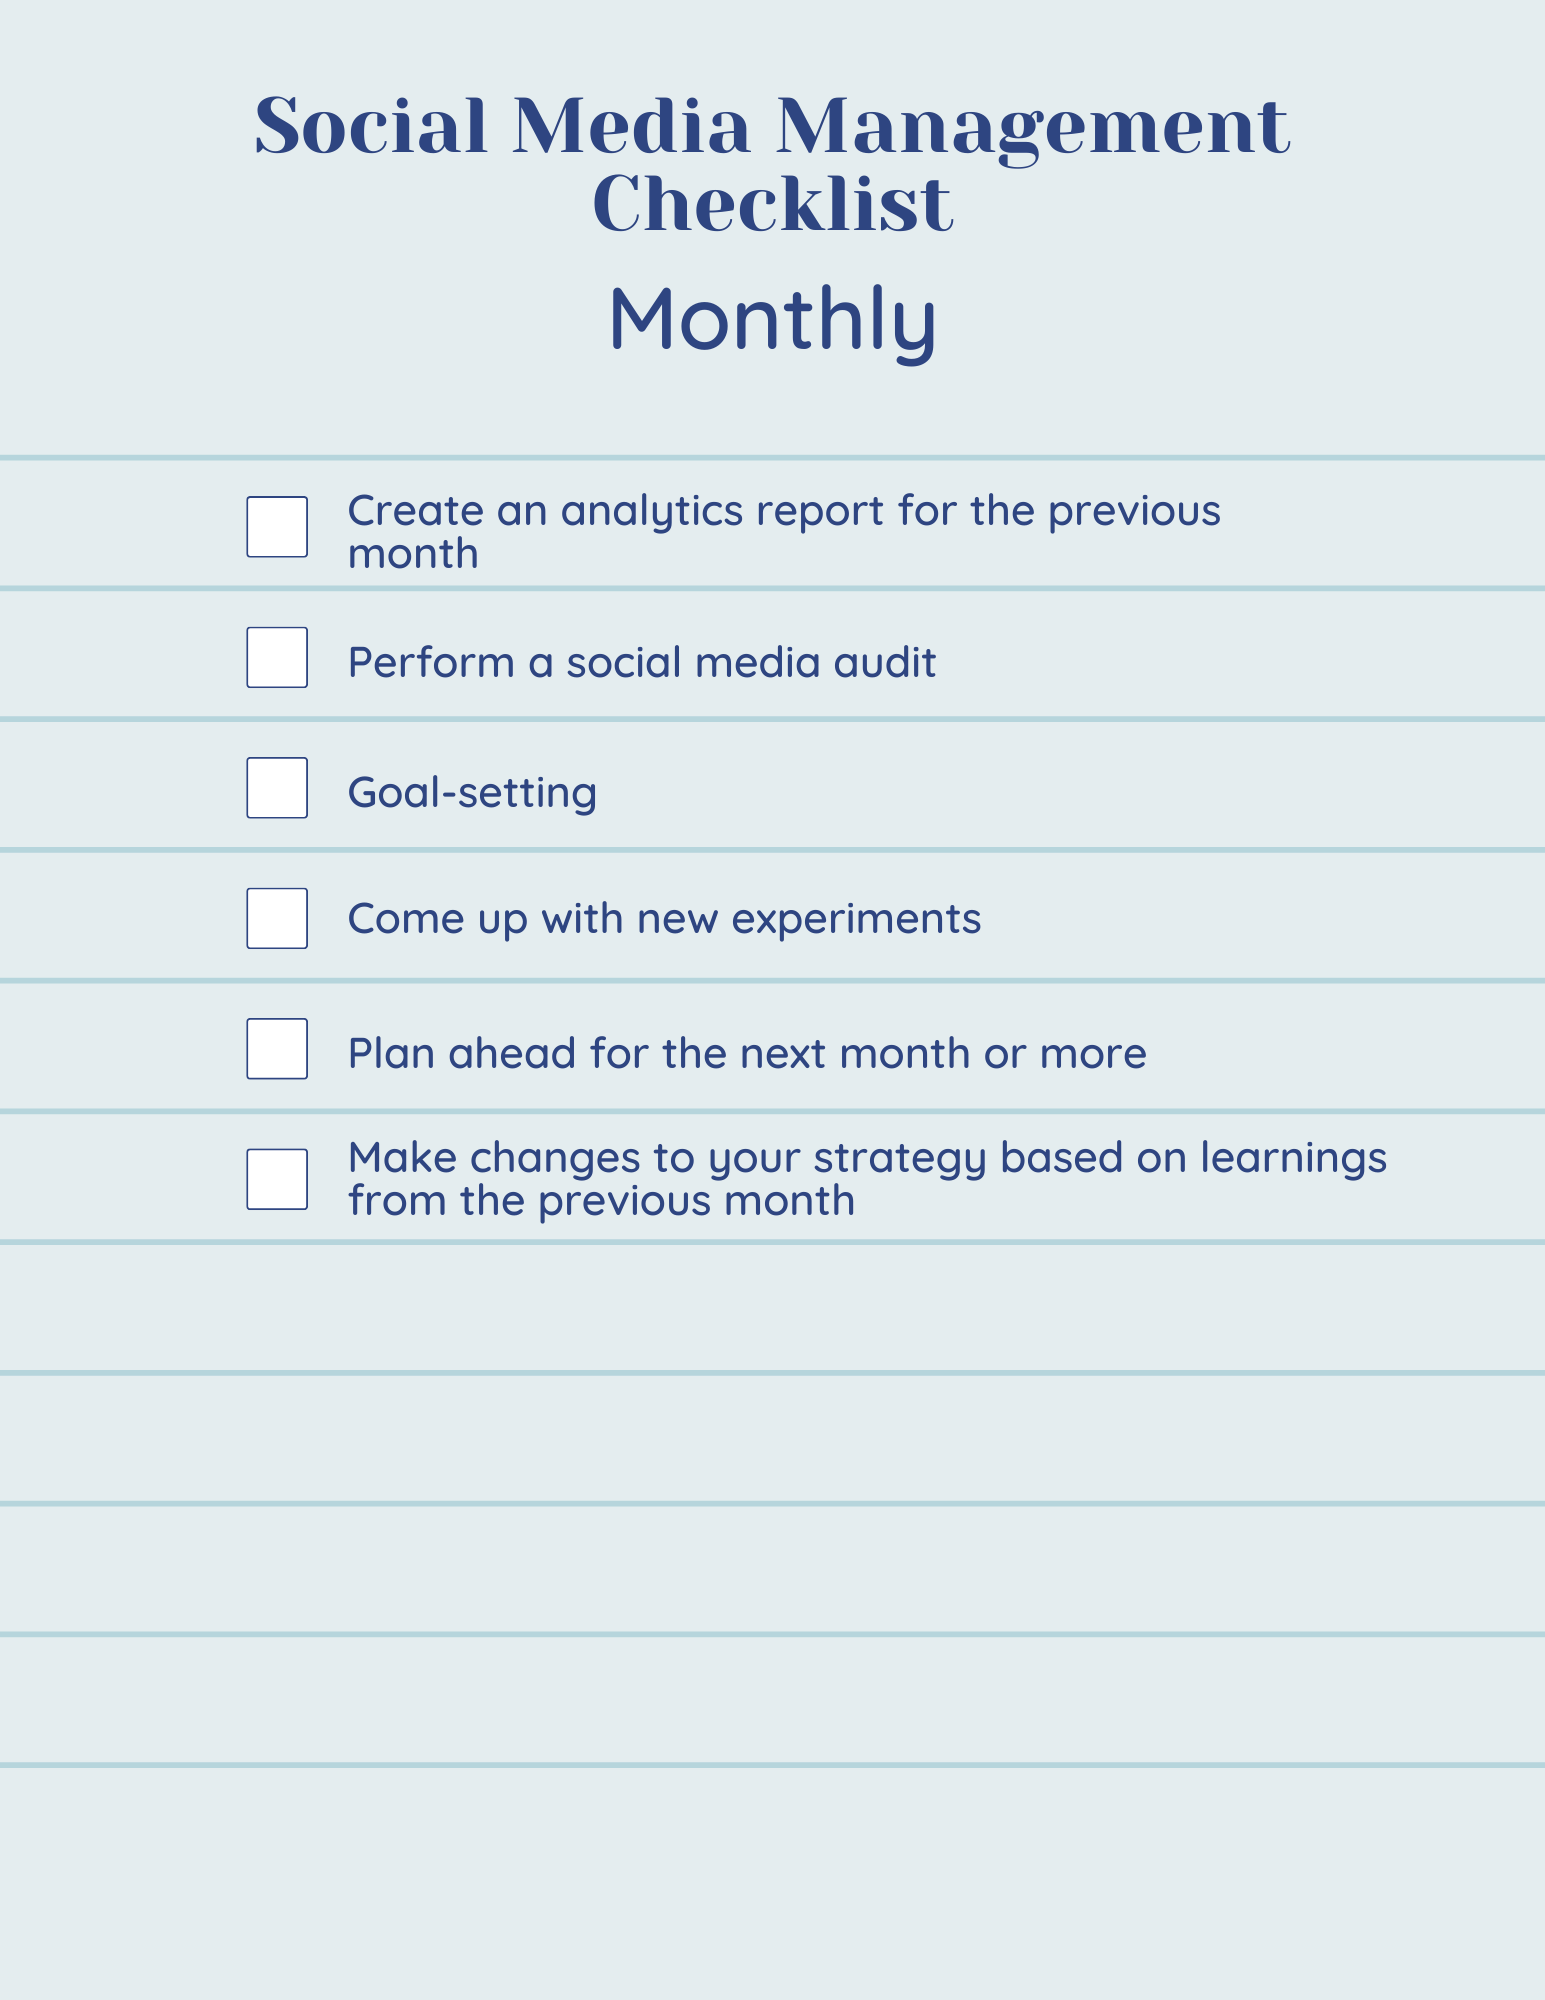 monthly social media checklist